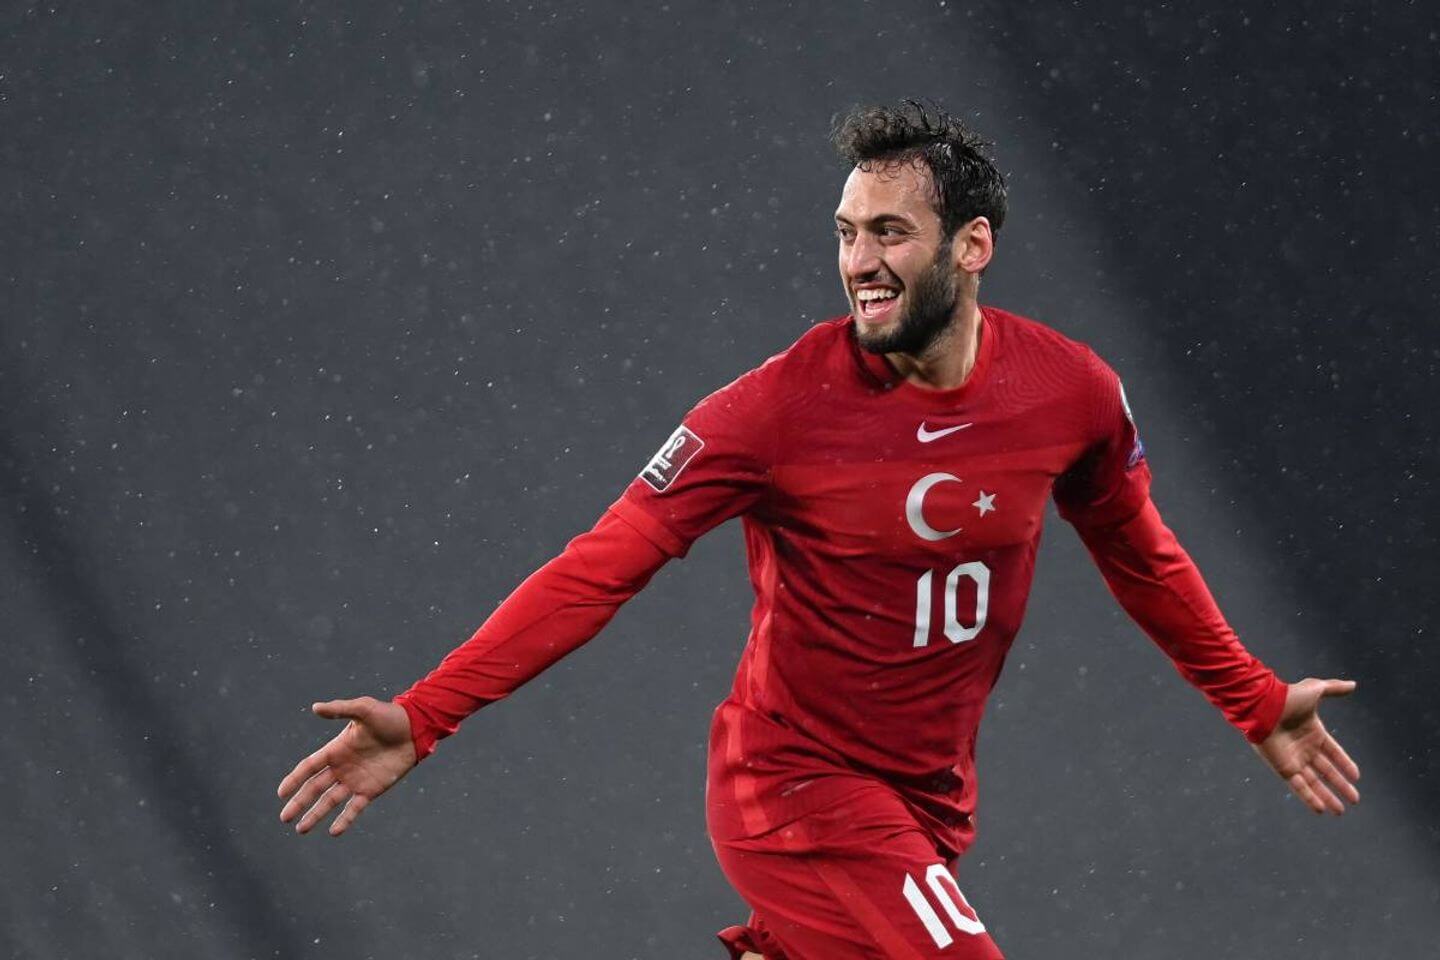 Ảnh cầu thủ đội tuyển Thổ Nhĩ Kỳ thi đấu 1